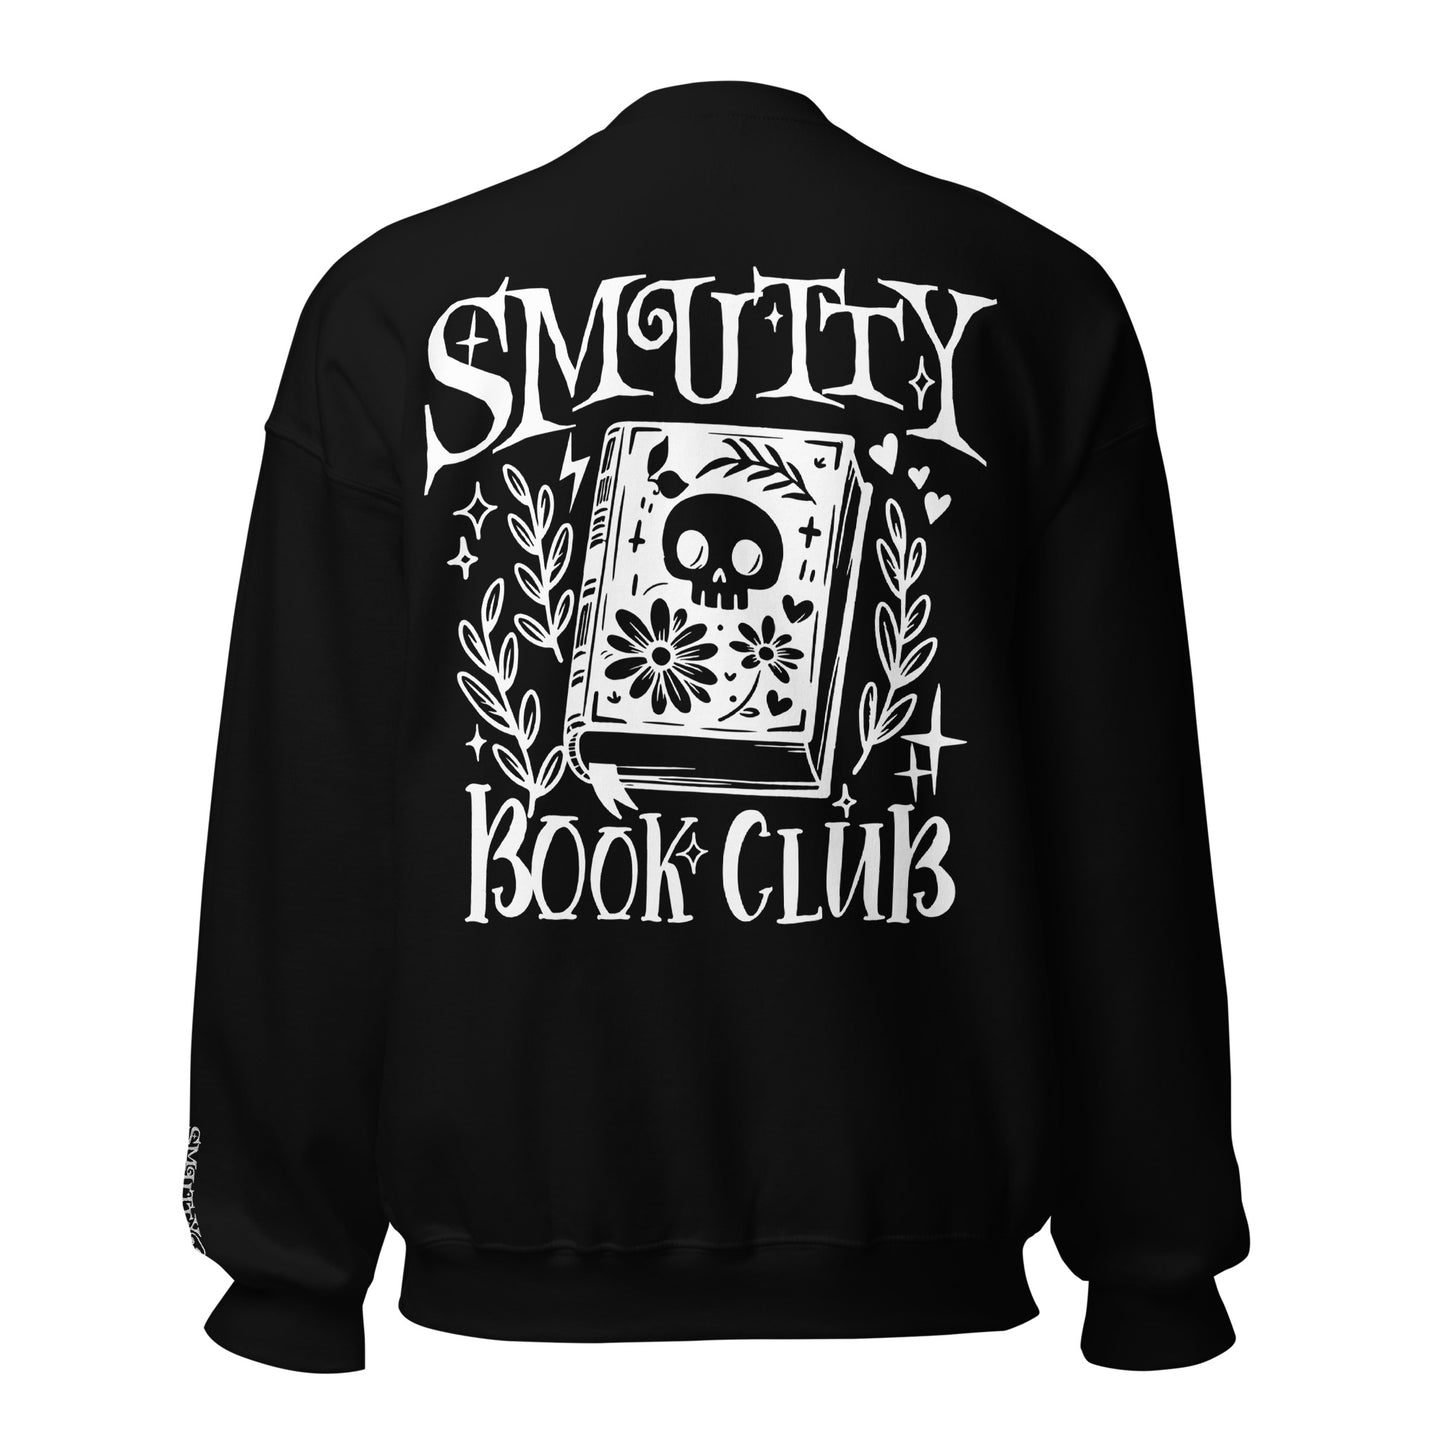 Smutty Book Club Sweatshirt - Broderi & Print